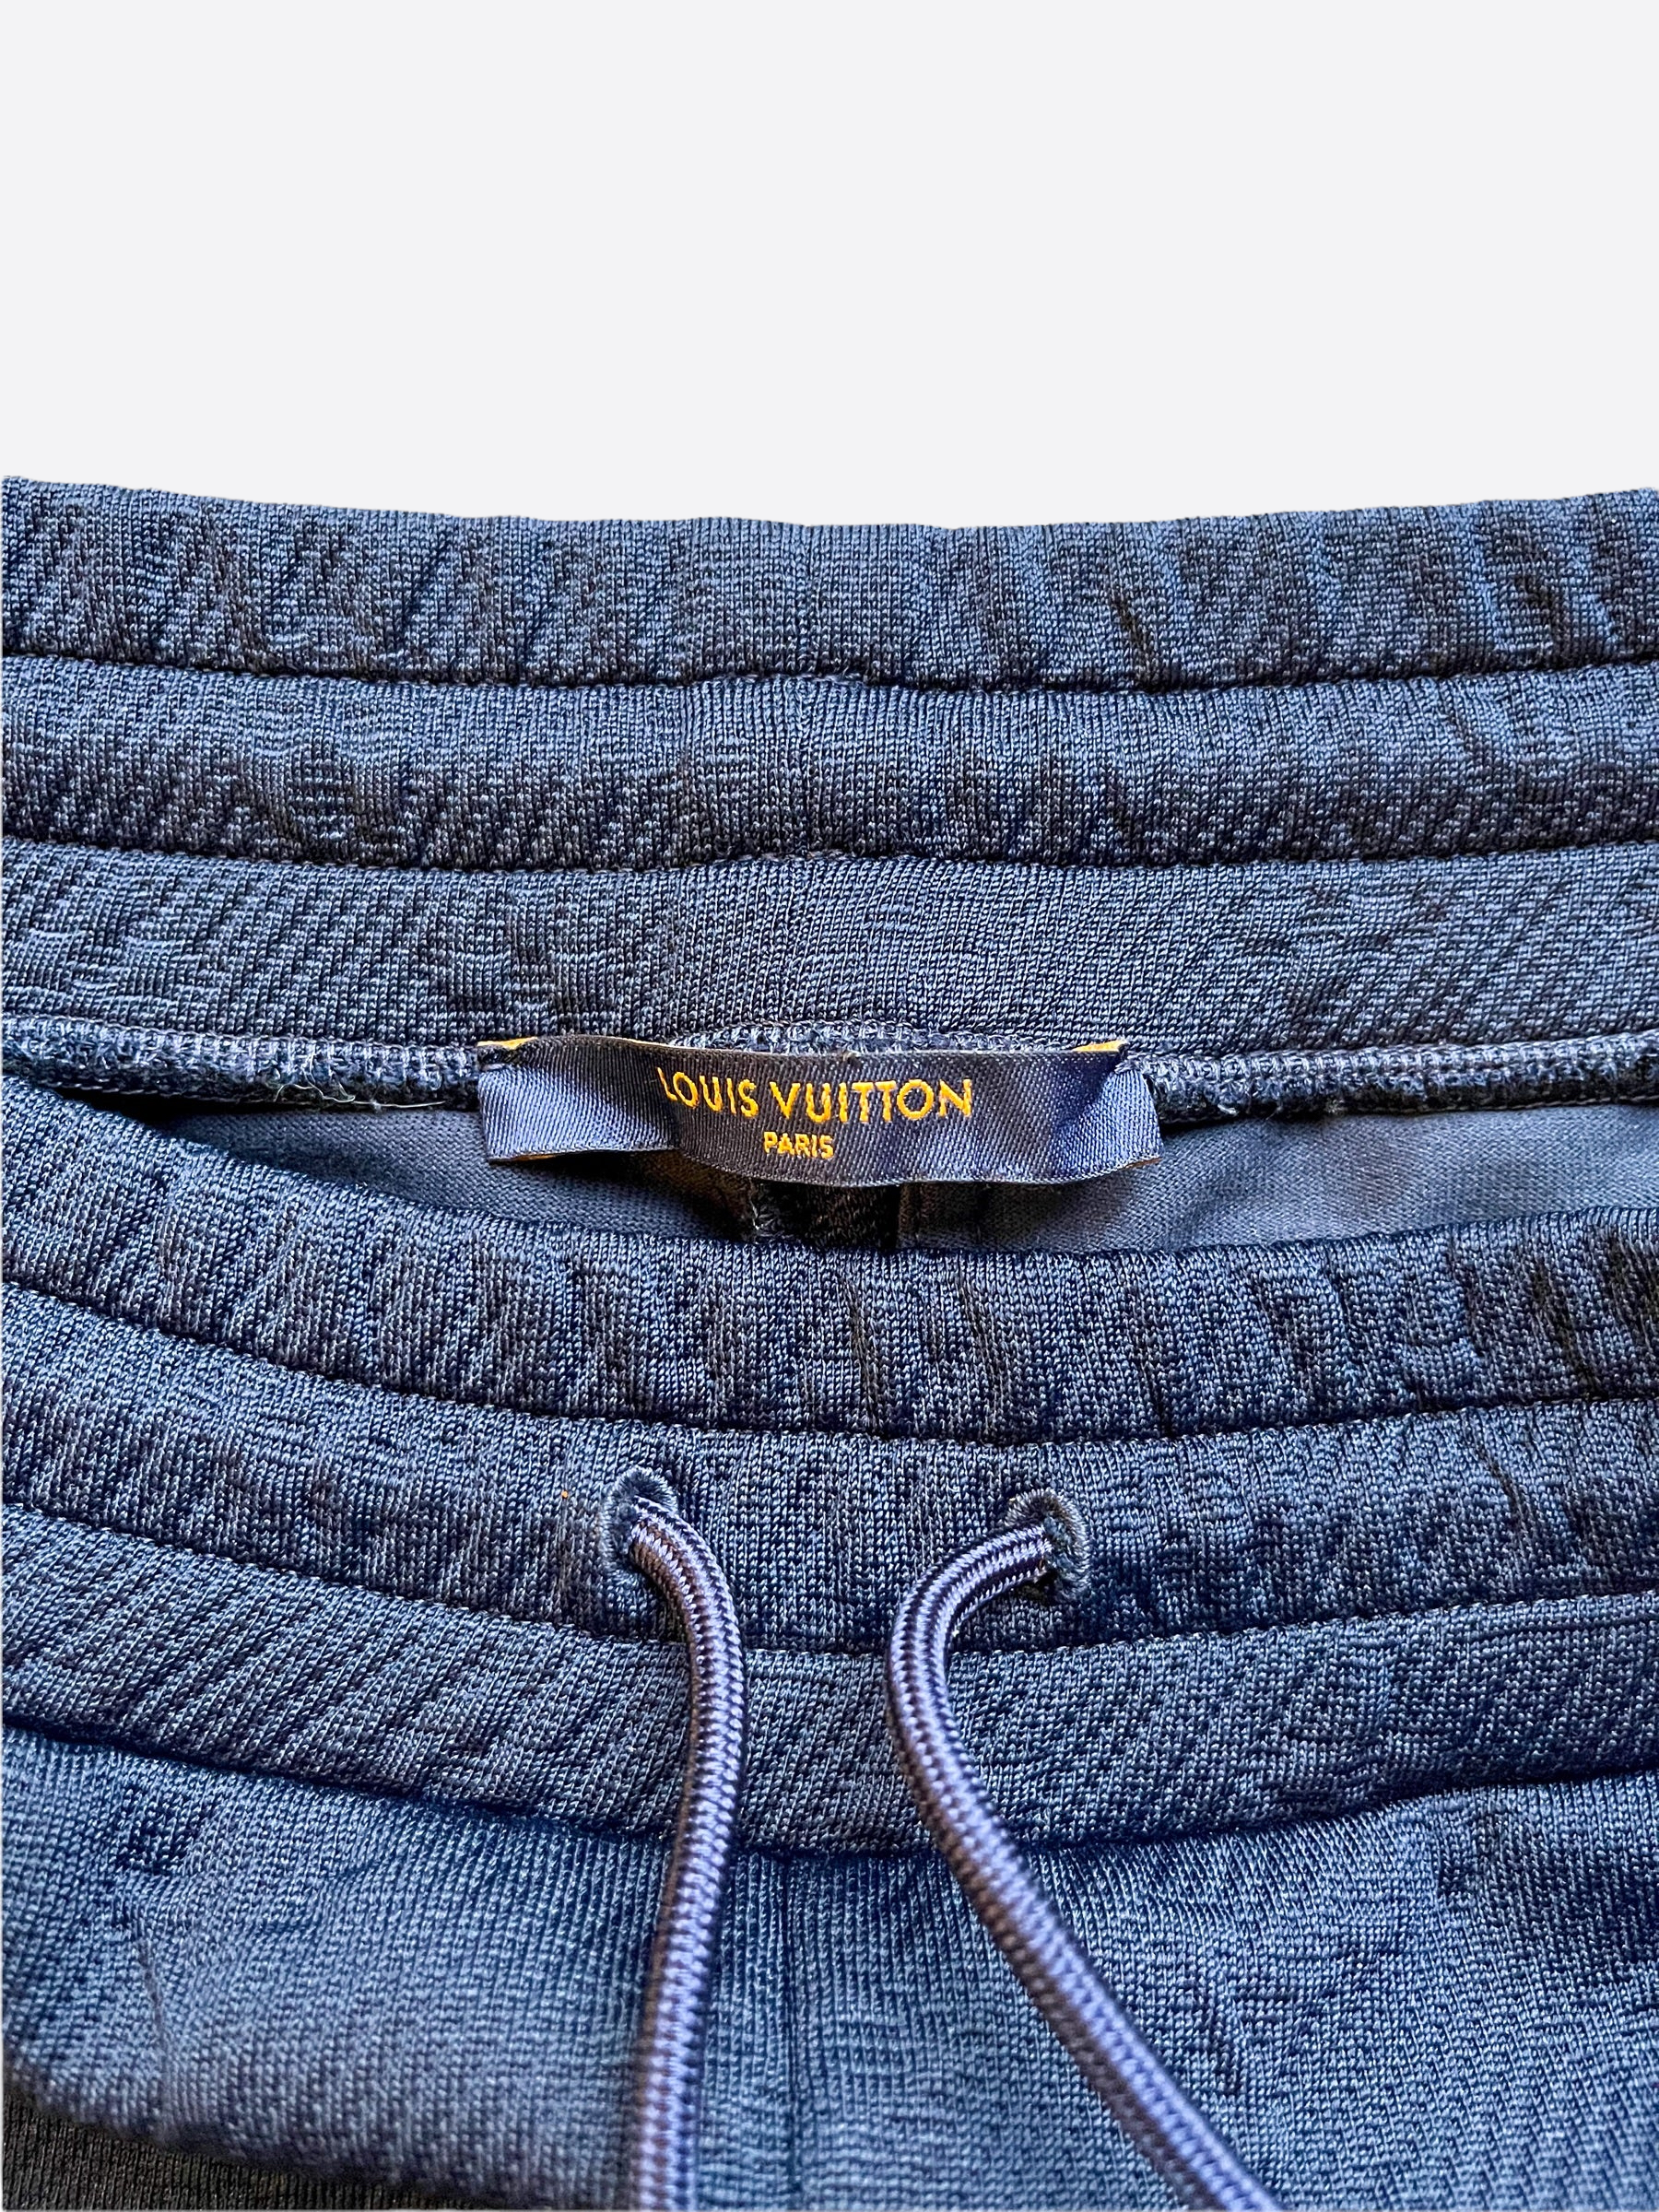 LV Louis Vuitton Staples Edition Monogram Track Pant, Navy, 3L